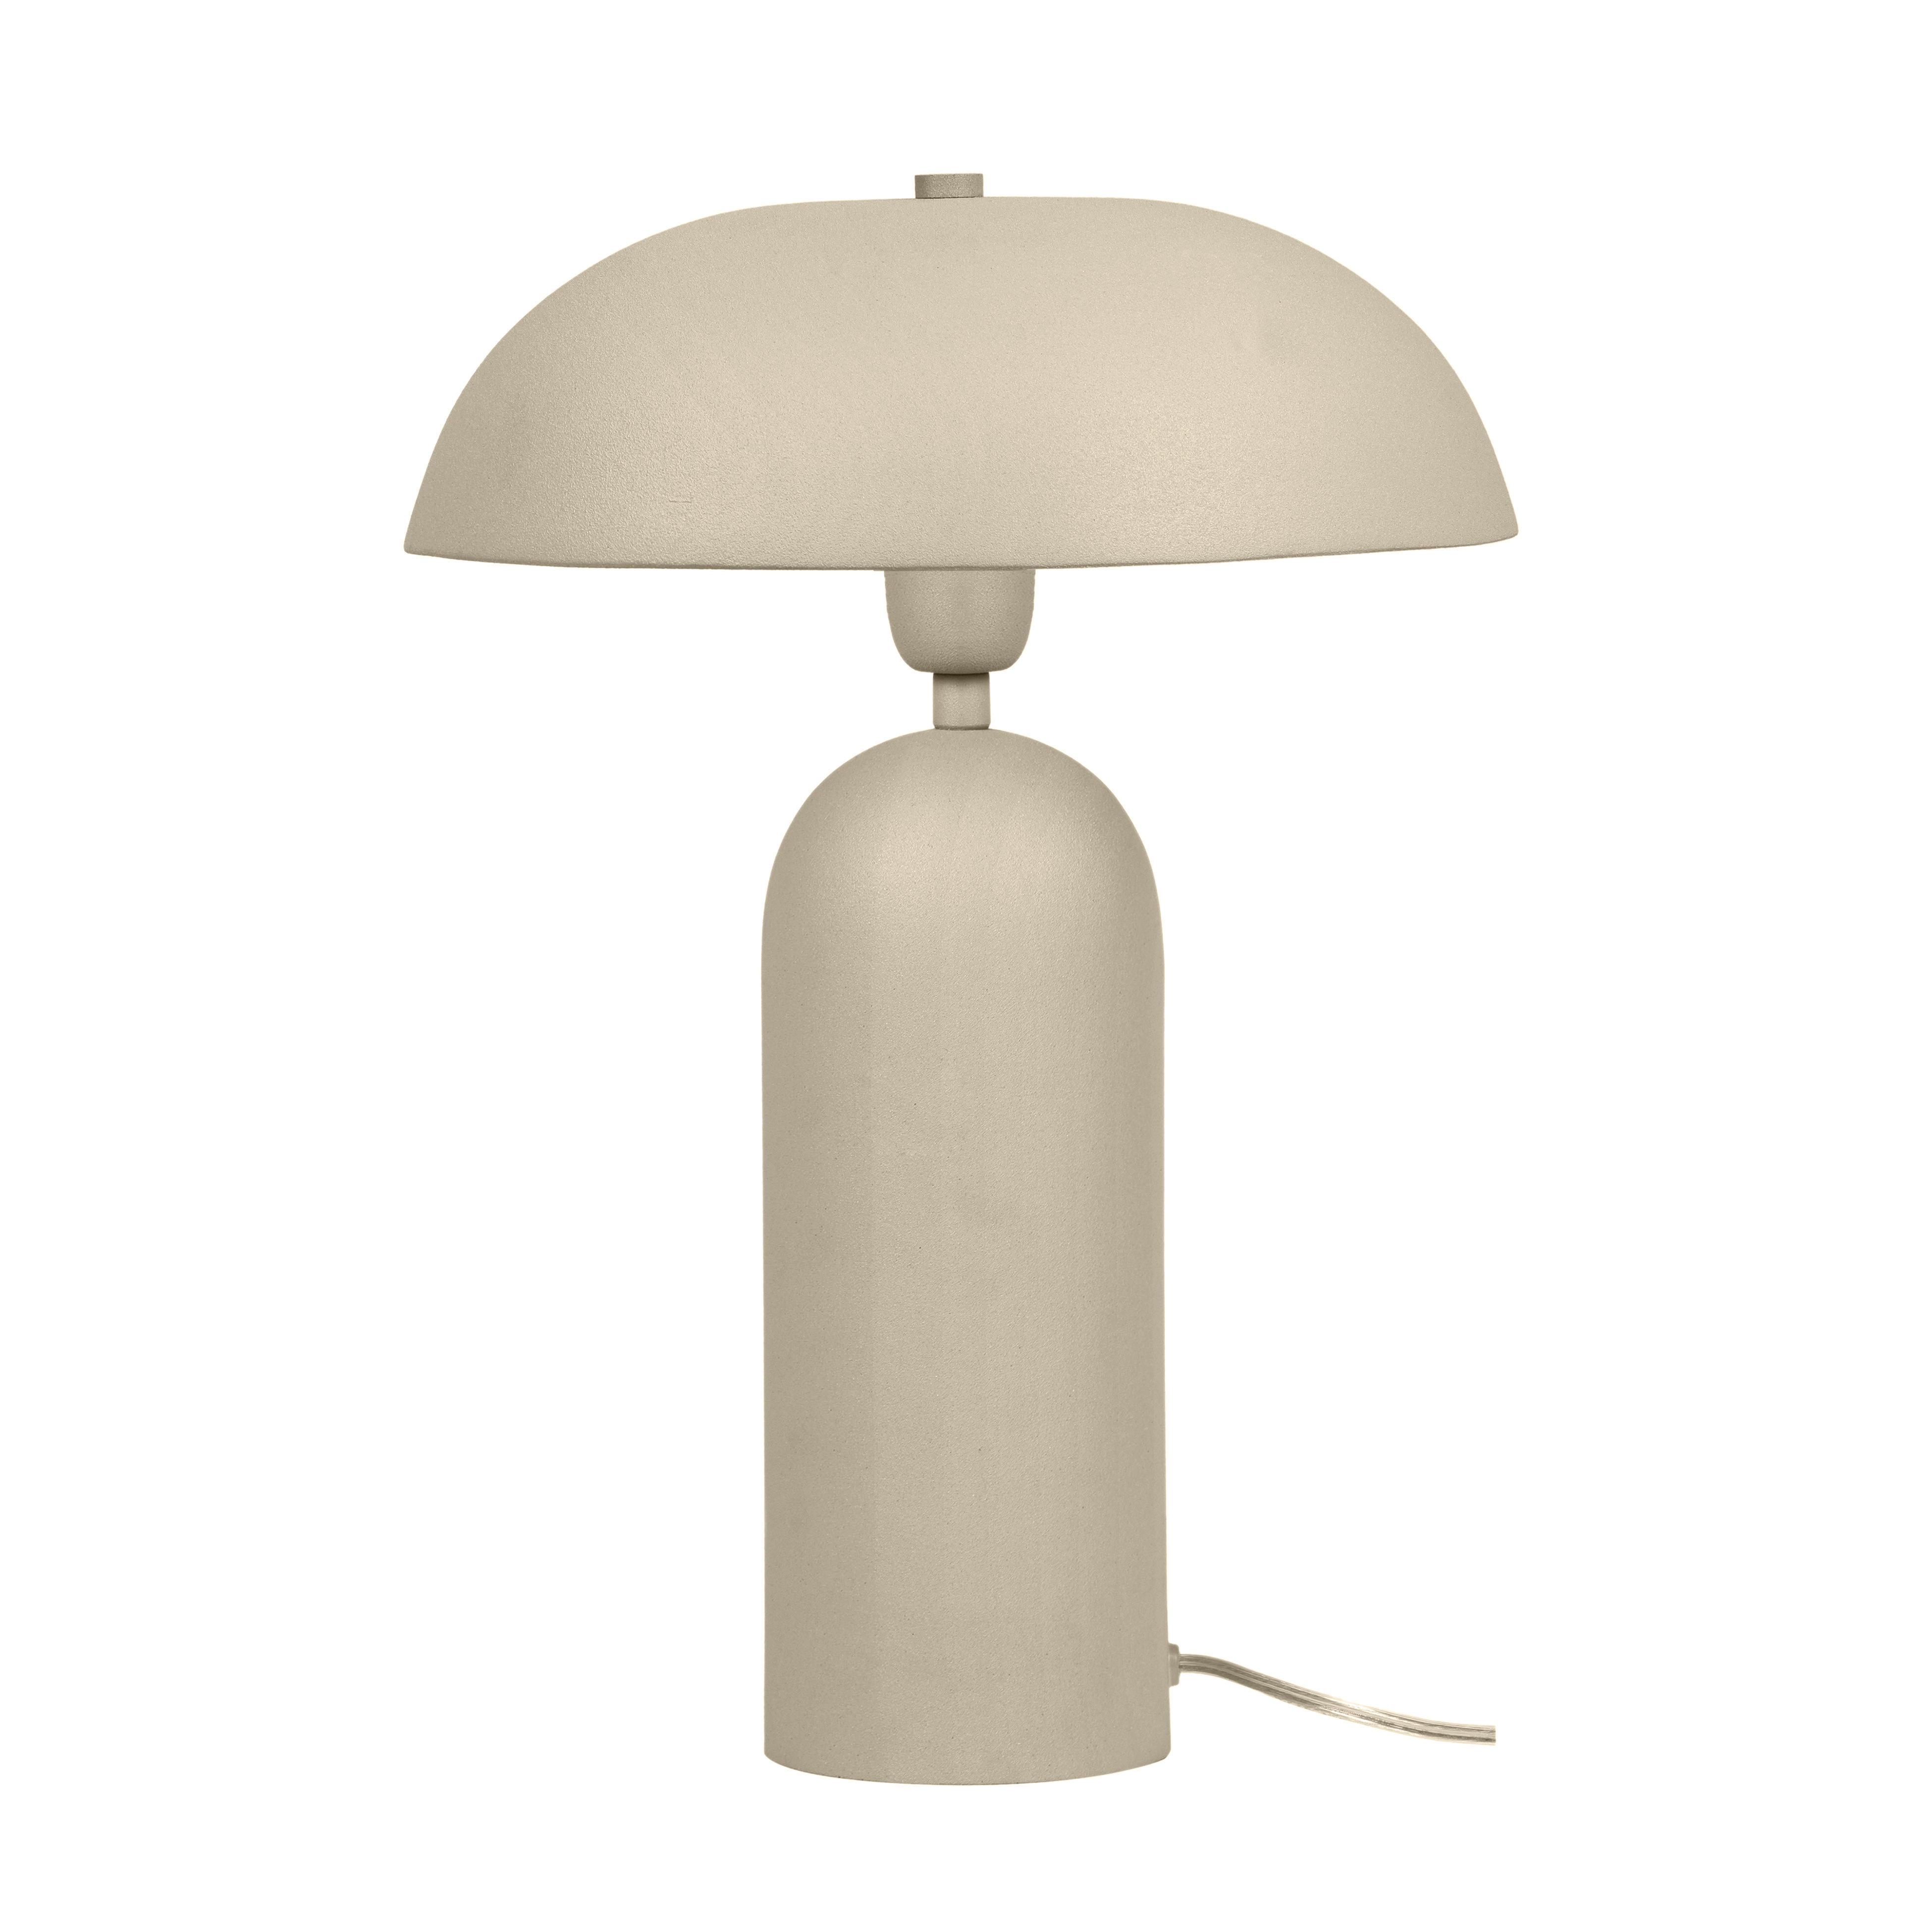 Sammi Taupe Table Lamp - Image 1